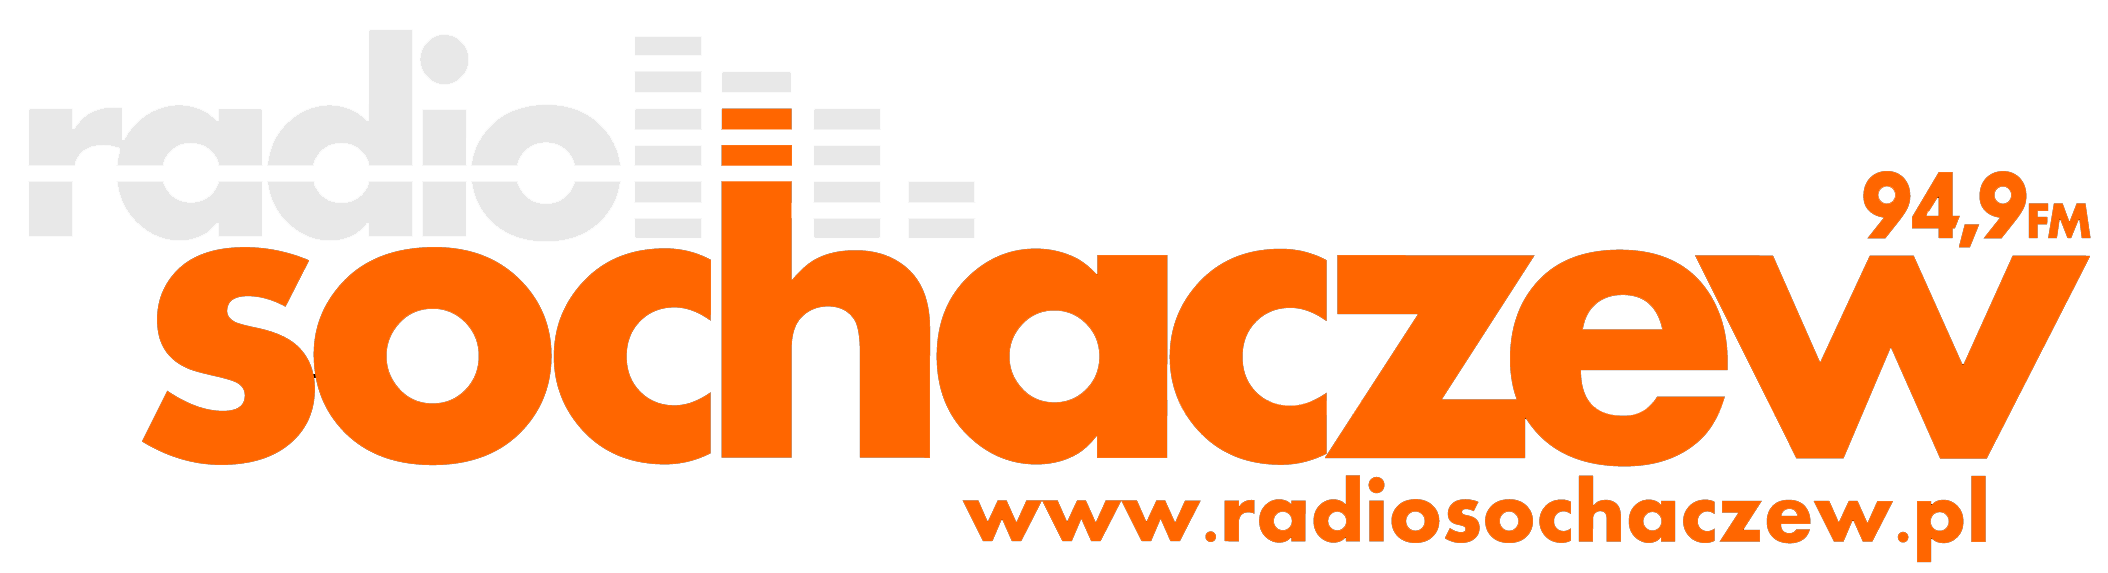 radio sochaczew logo